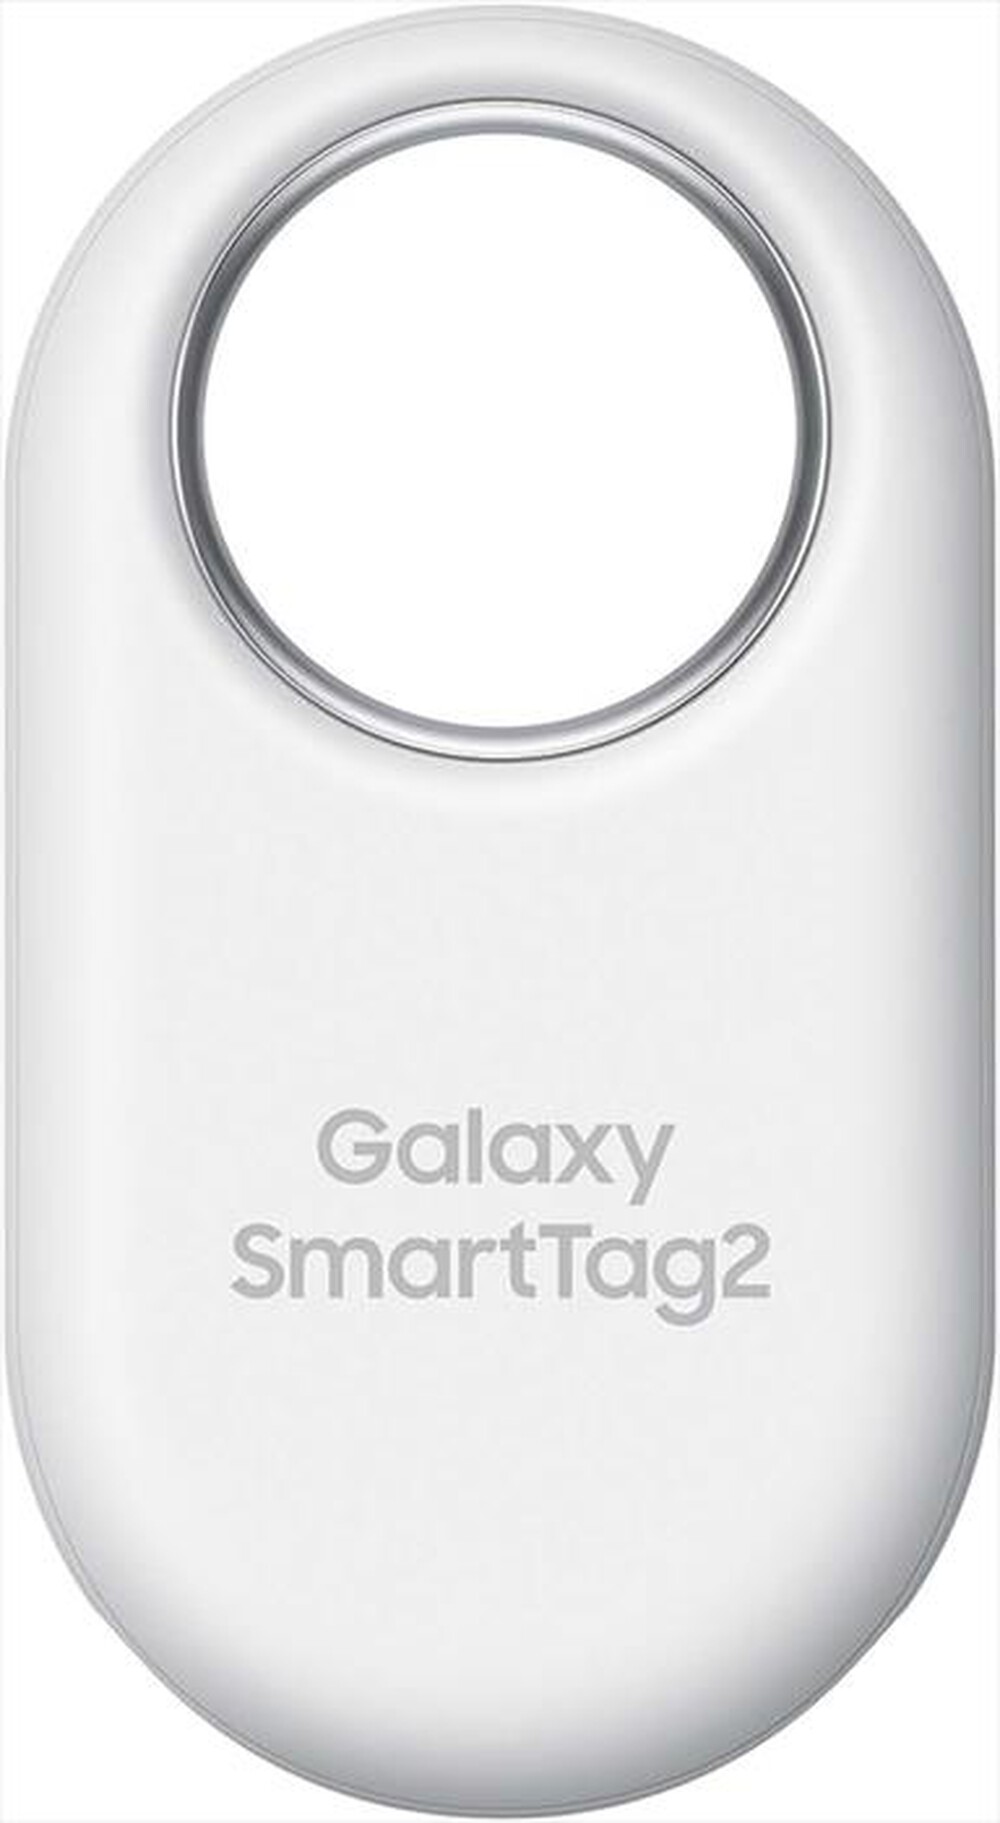 "SAMSUNG - Localizzatore Bluetooth Galaxy SmartTag2-Bianco"